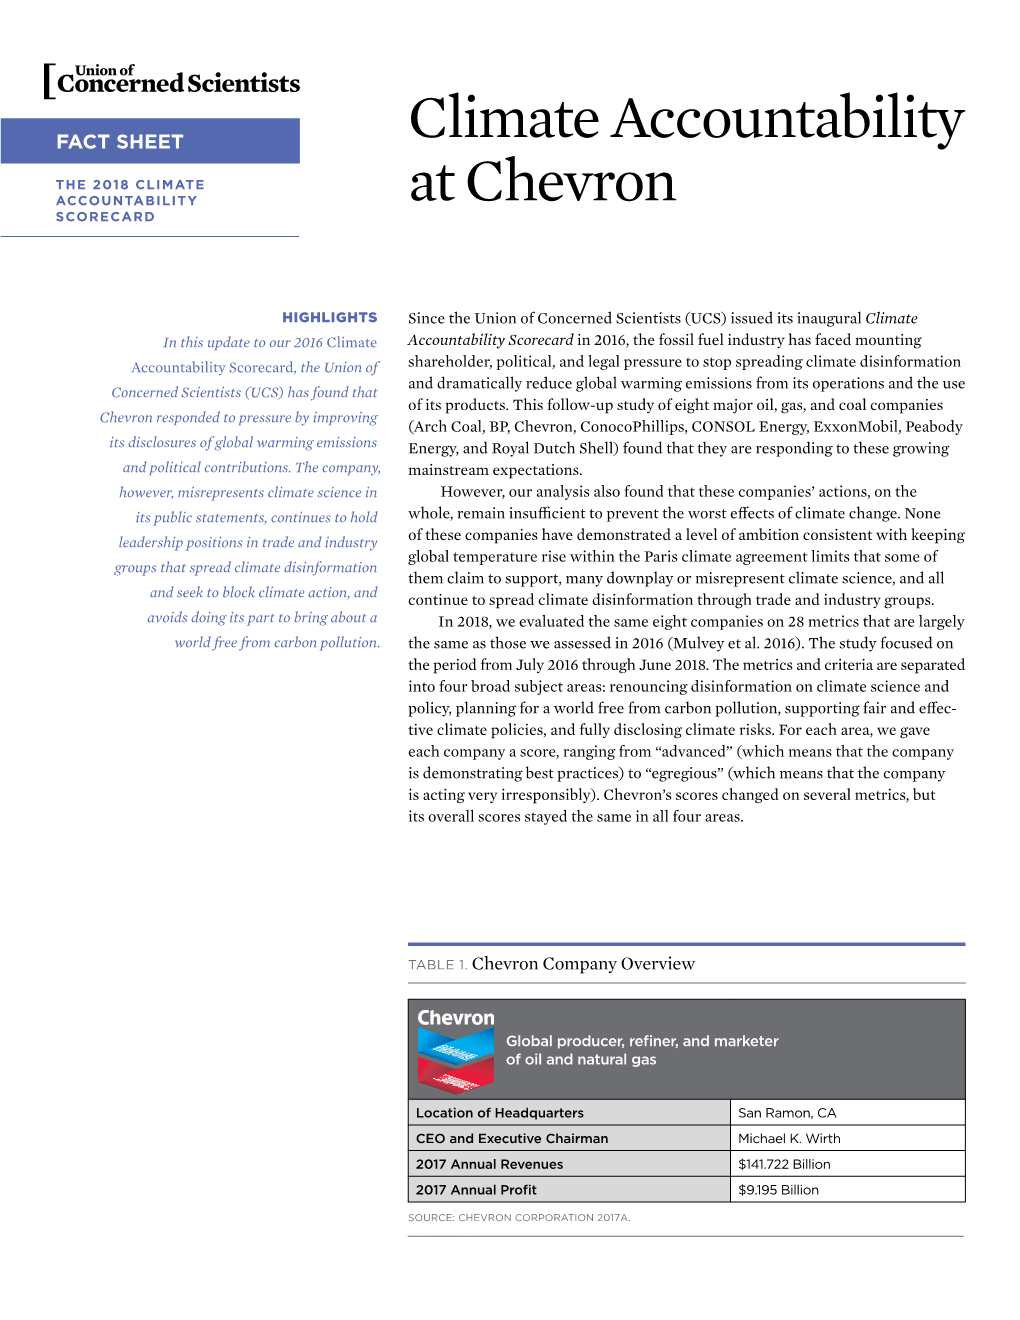 Chevron SCORECARD